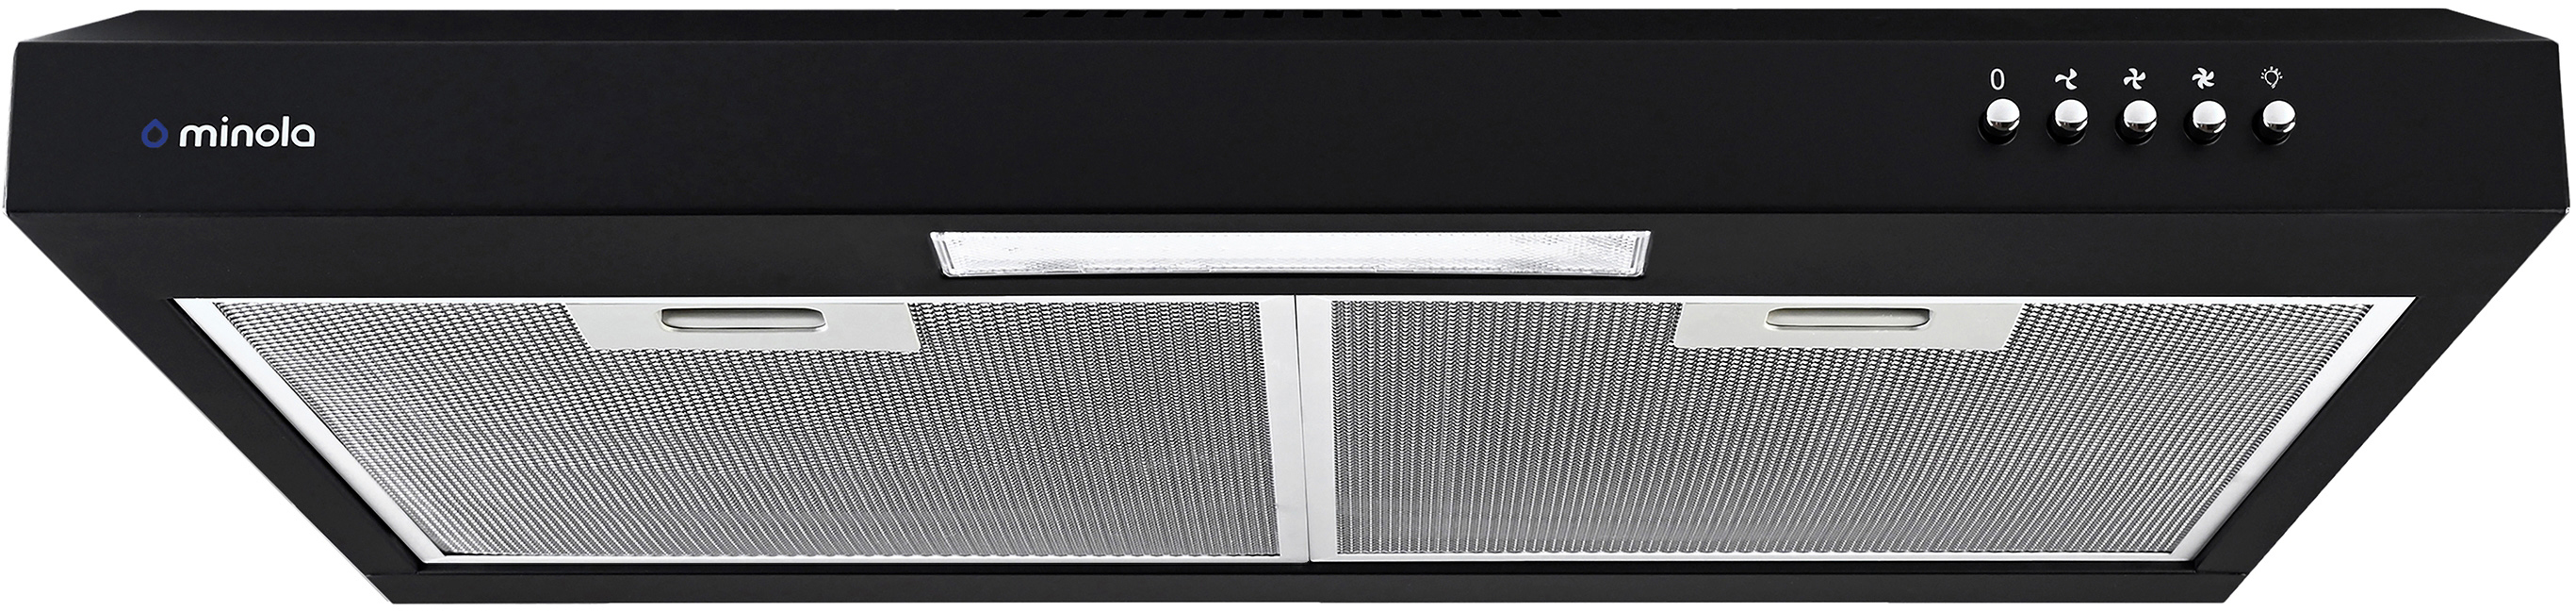 Витяжка кухонная плоская Minola HPL 612 BL в интернет-магазине, главное фото